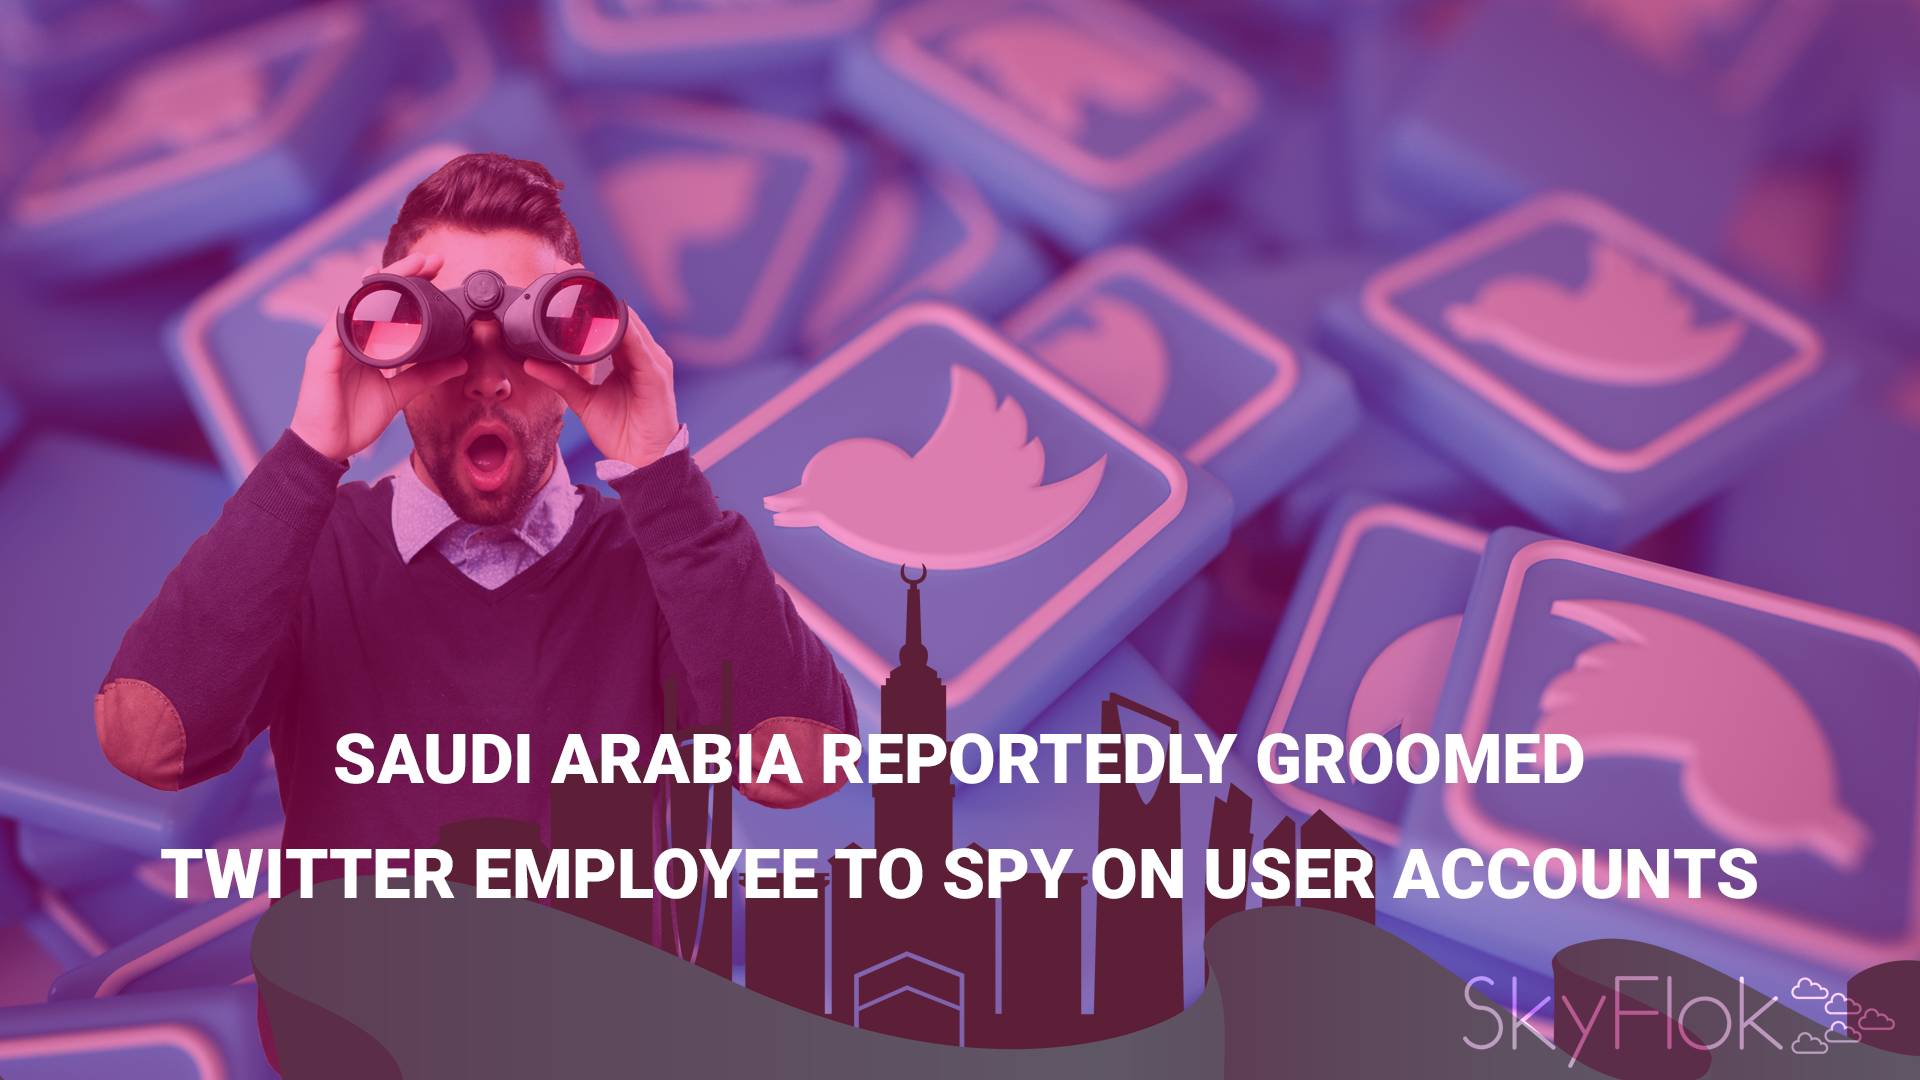 Saudi Arabia reportedly groomed Twitter employee to spy on user accounts